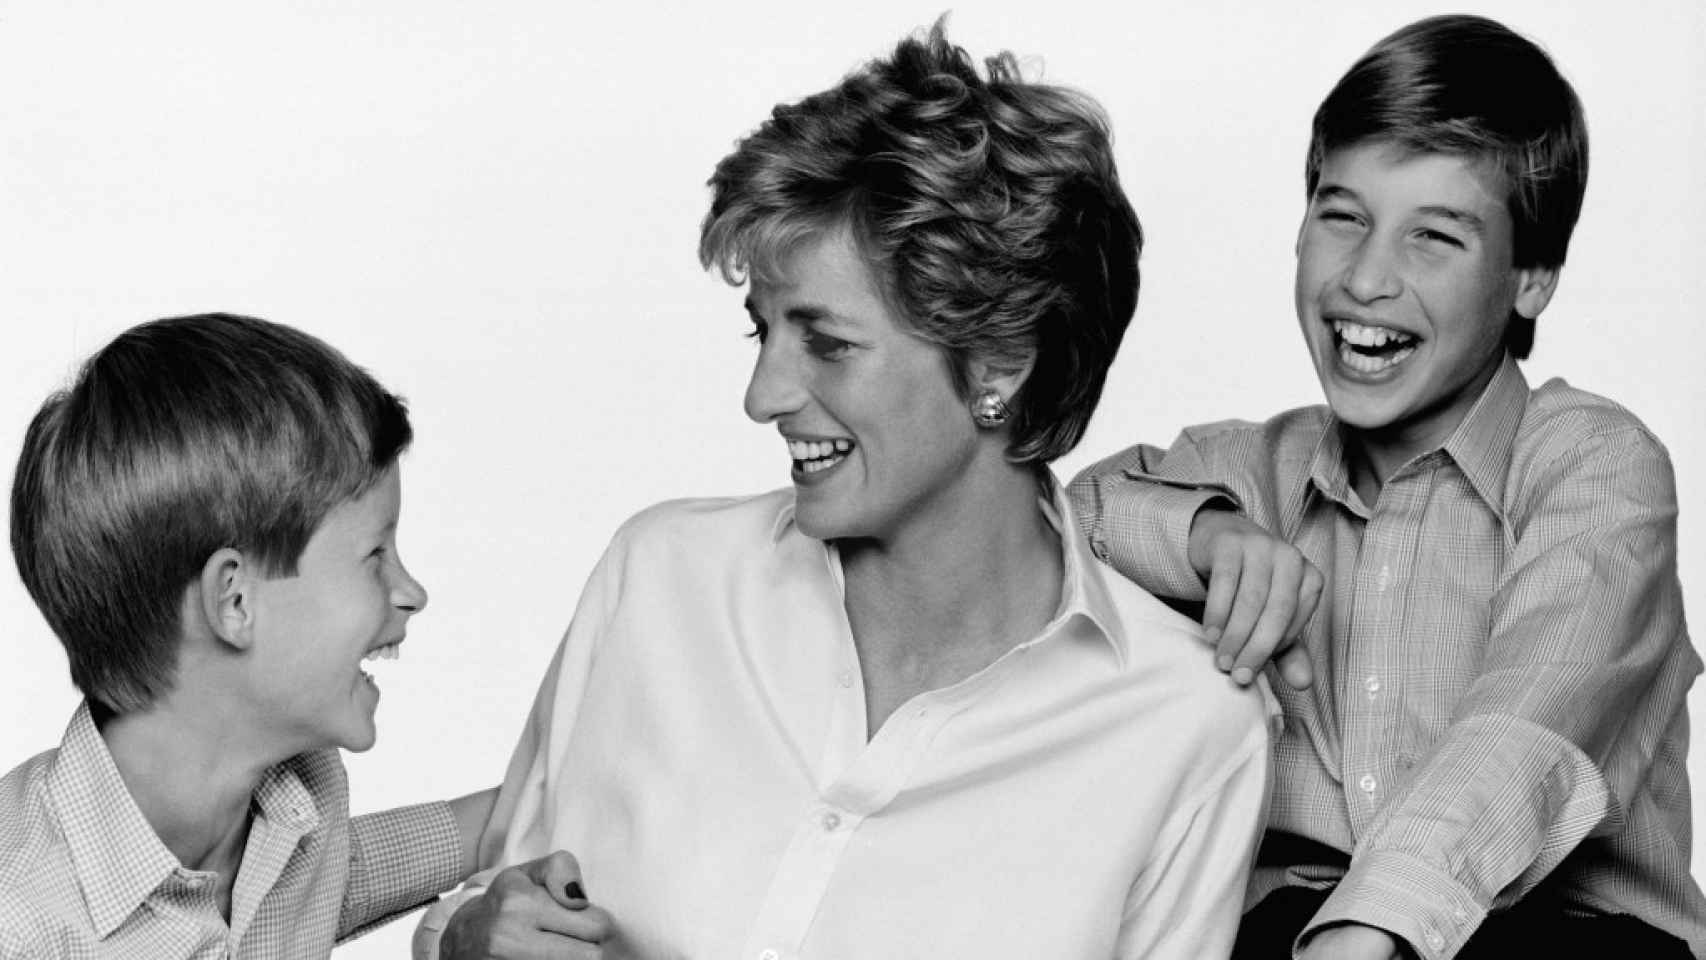 Diana de Gales siempre sonreía cuando estaba con sus hijos